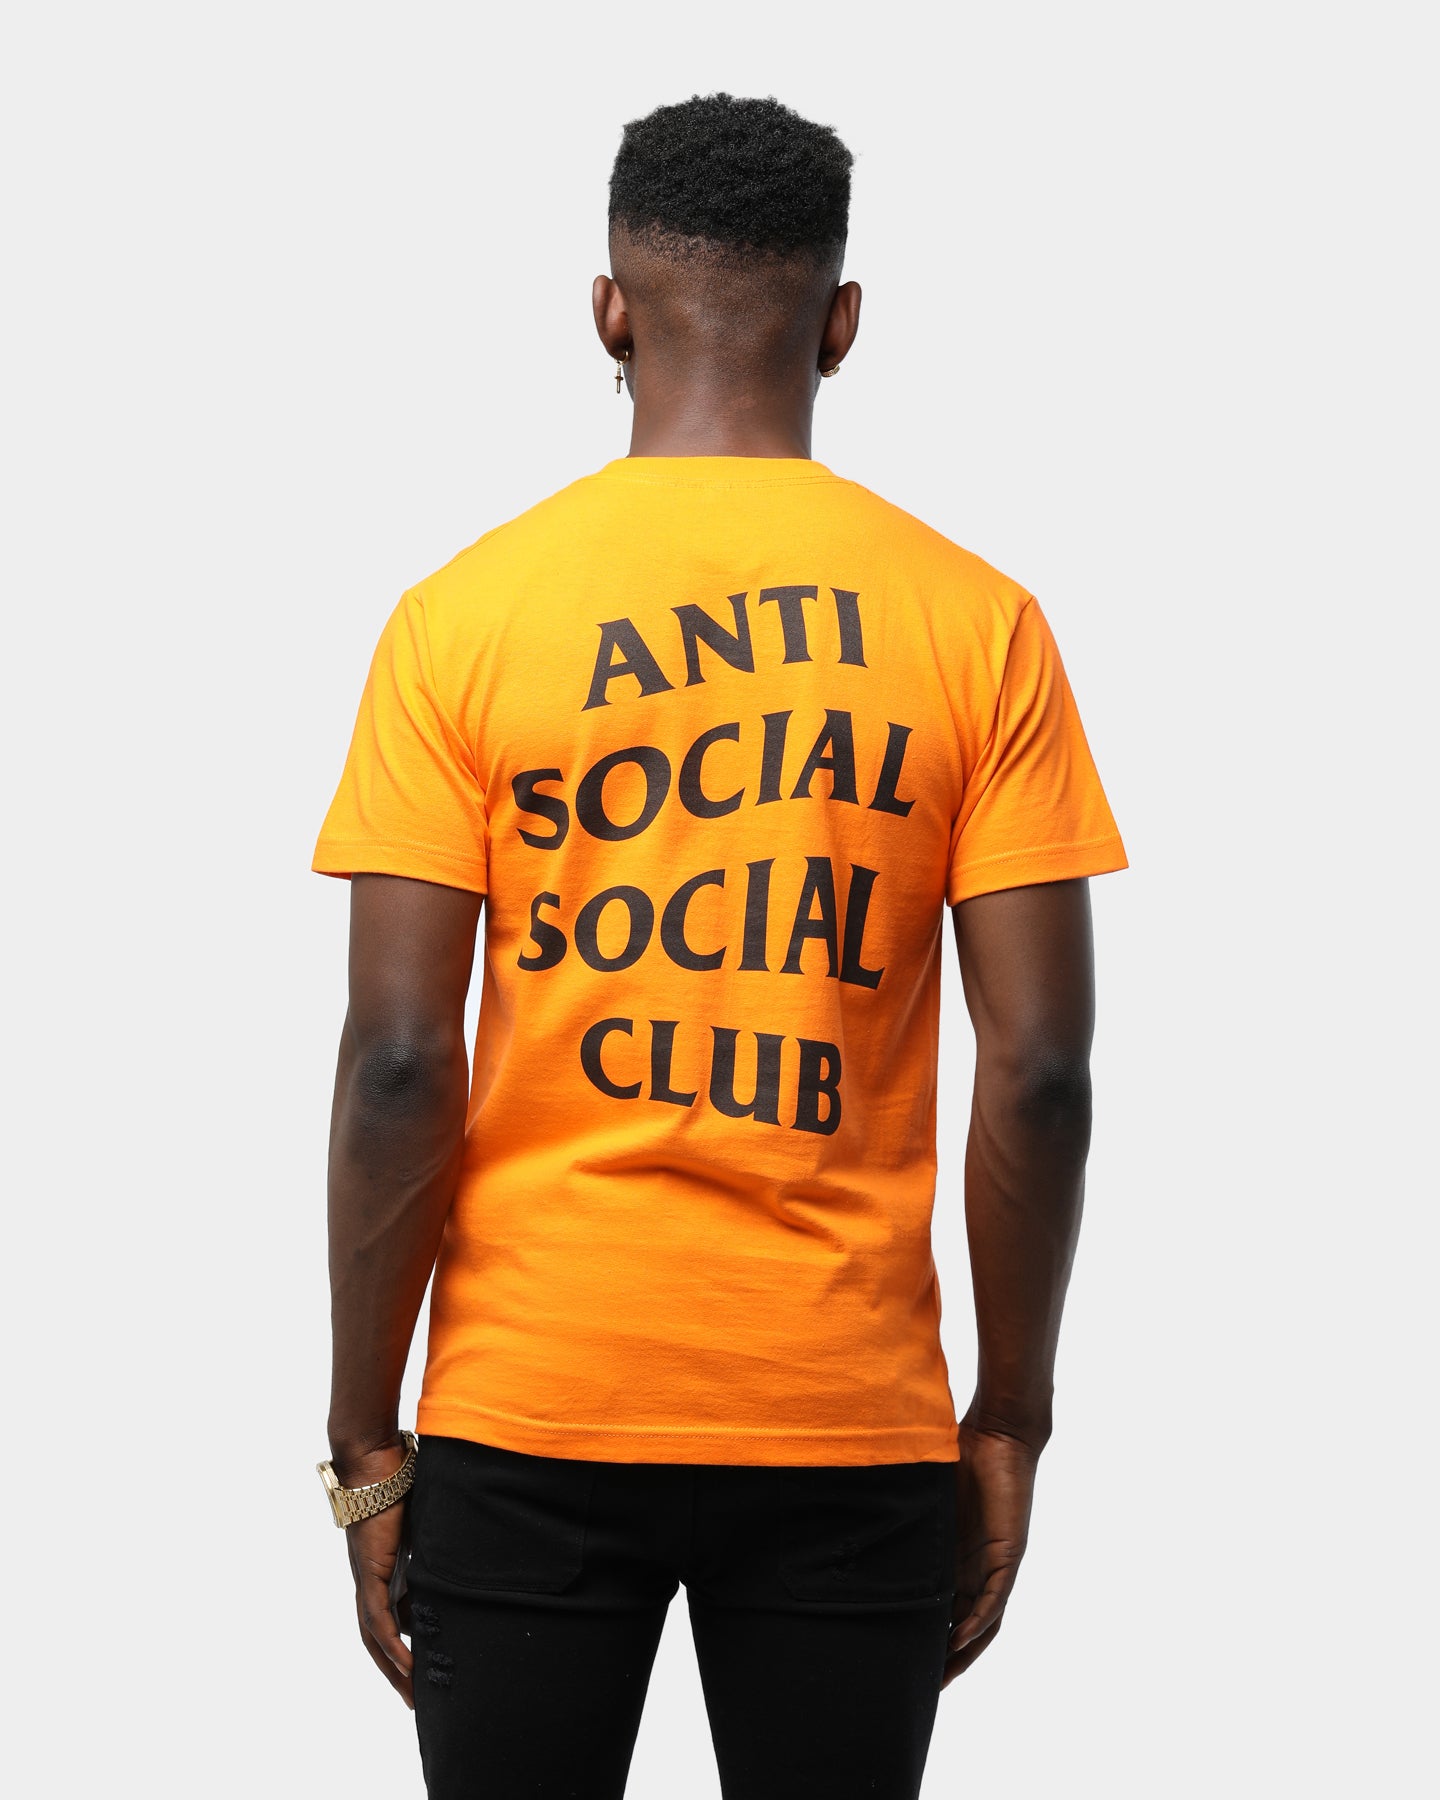 anti social social club shirt retail price